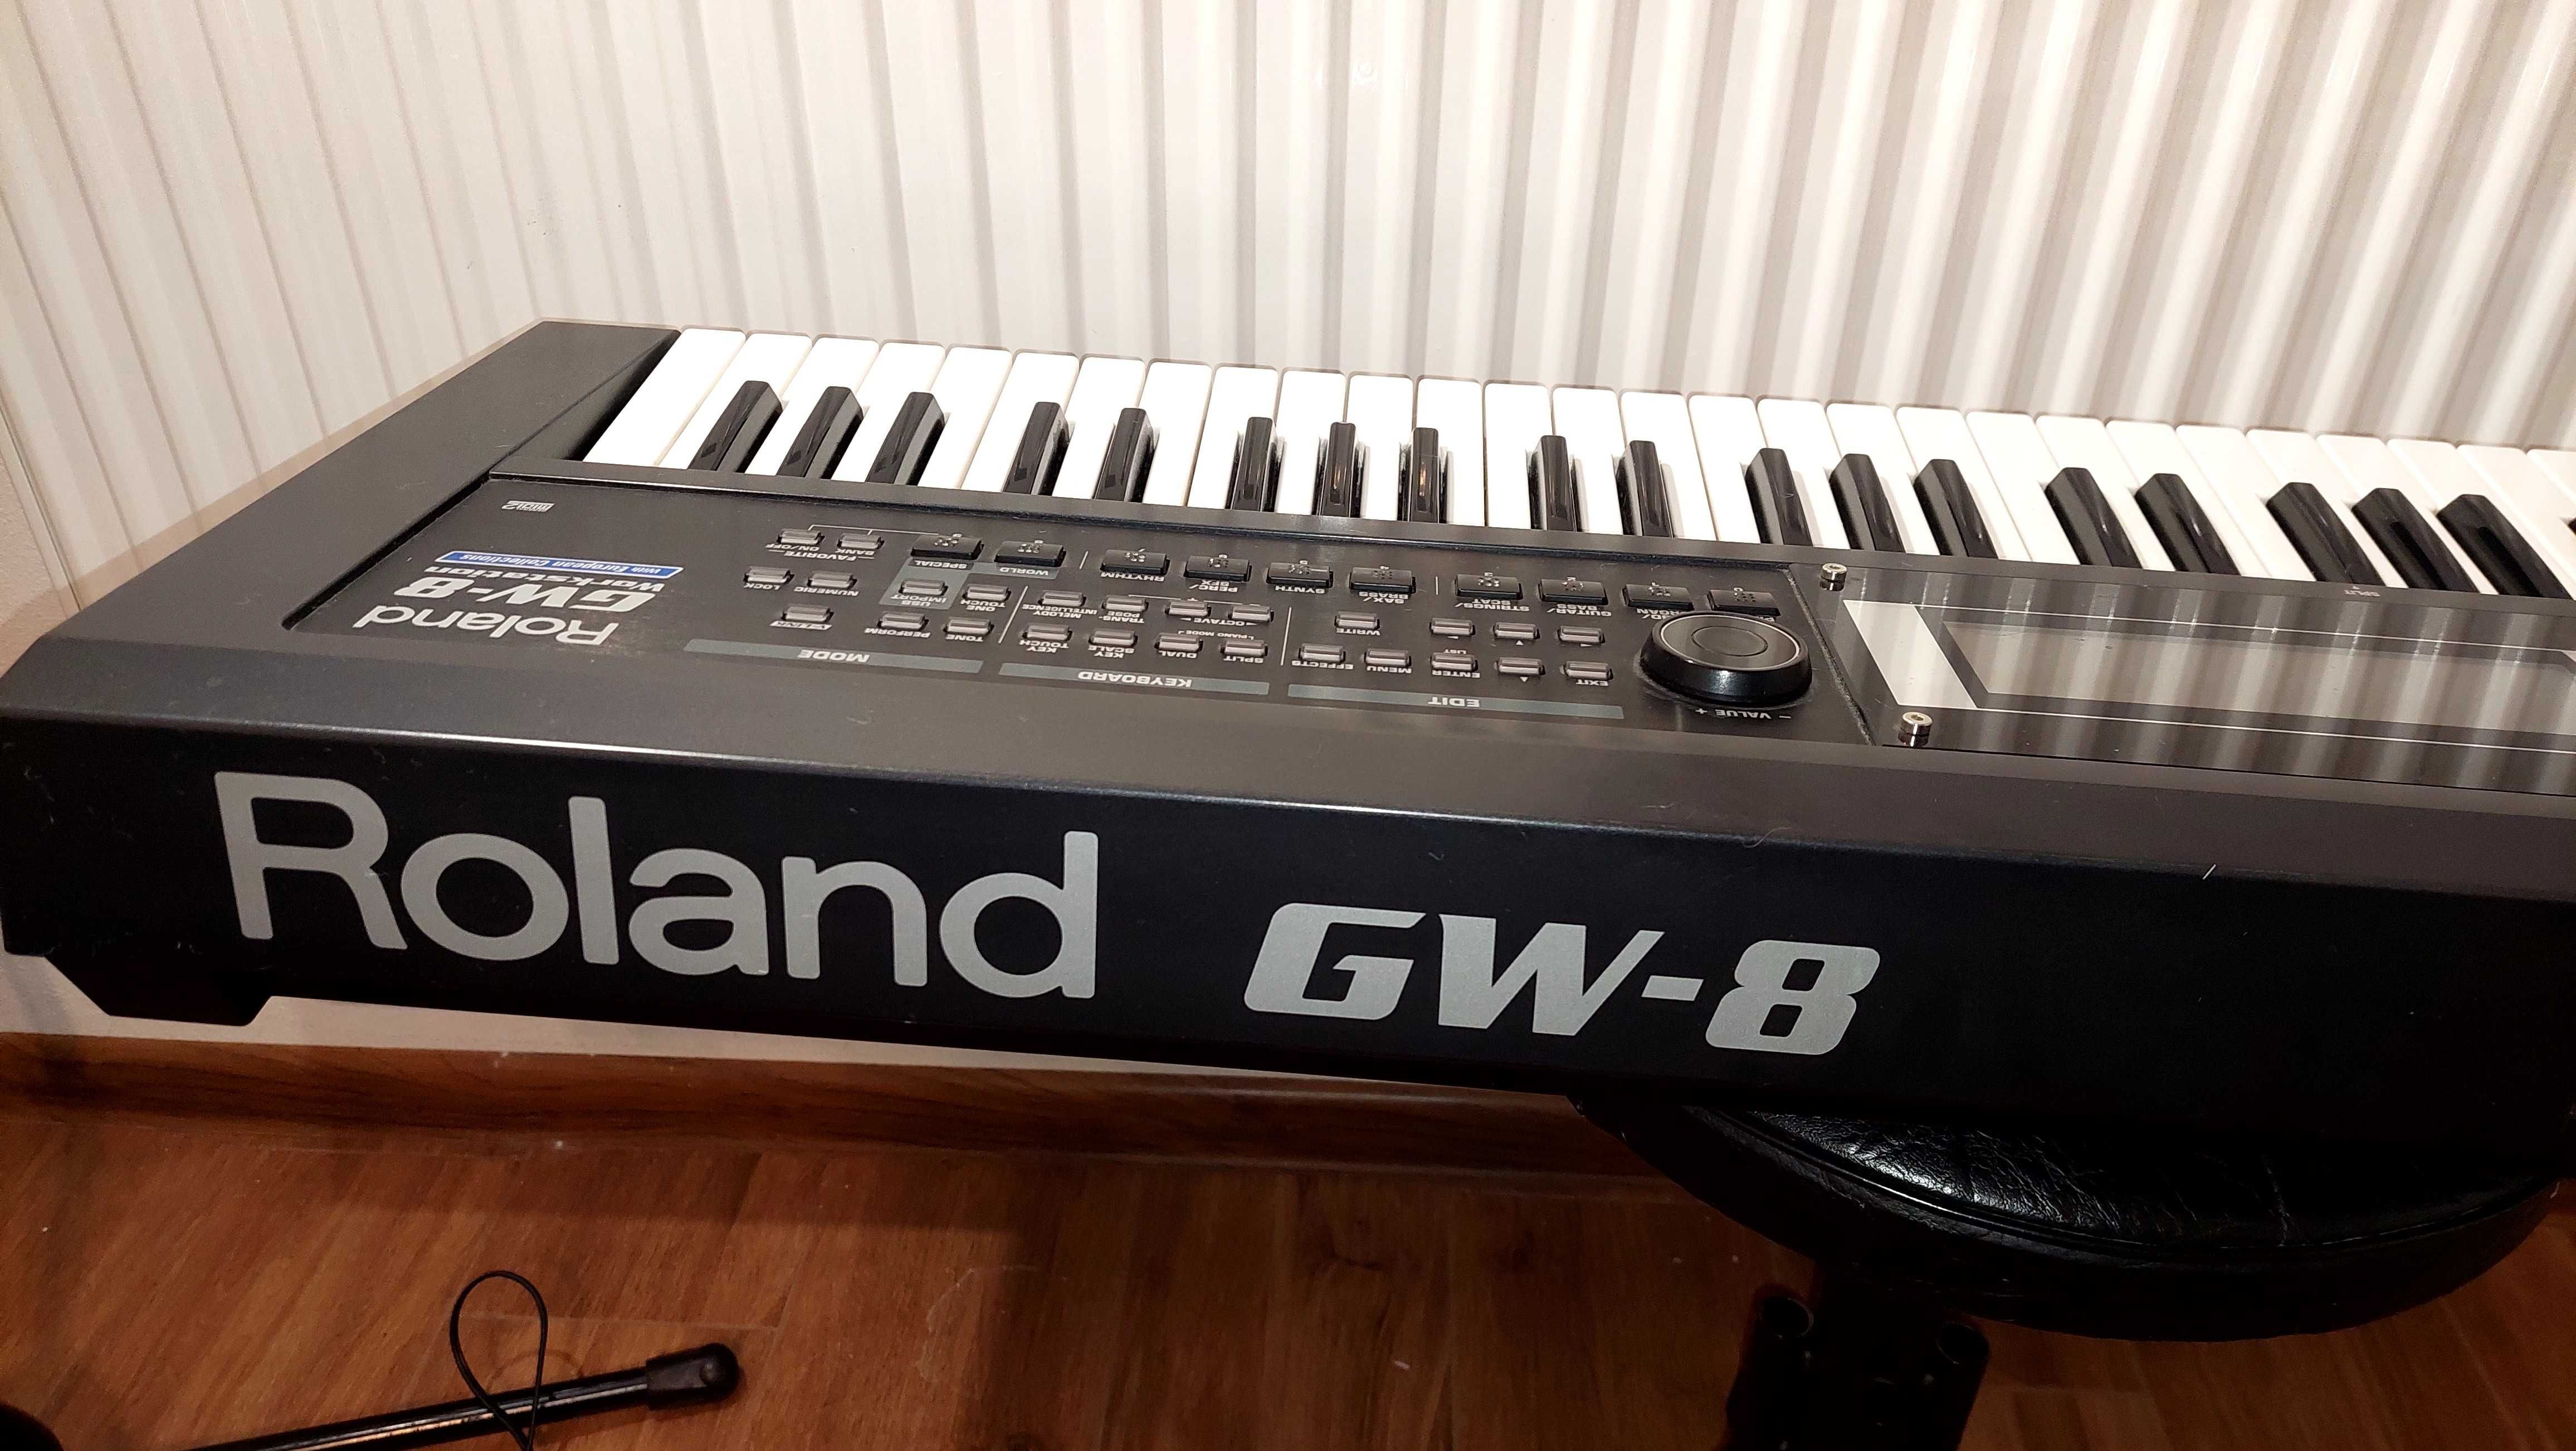 Roland GW-8 z twardym futerałem - okazja!